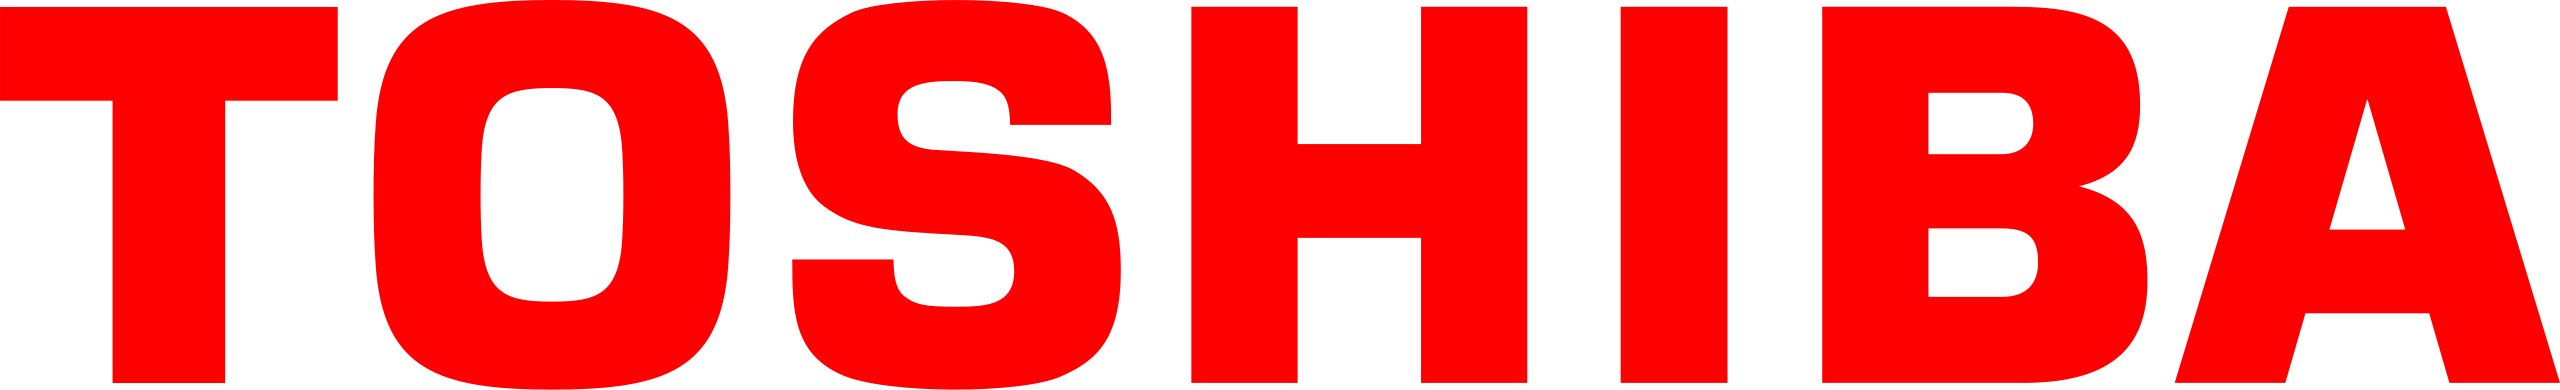 Logo Frigeris Klimatyzacje